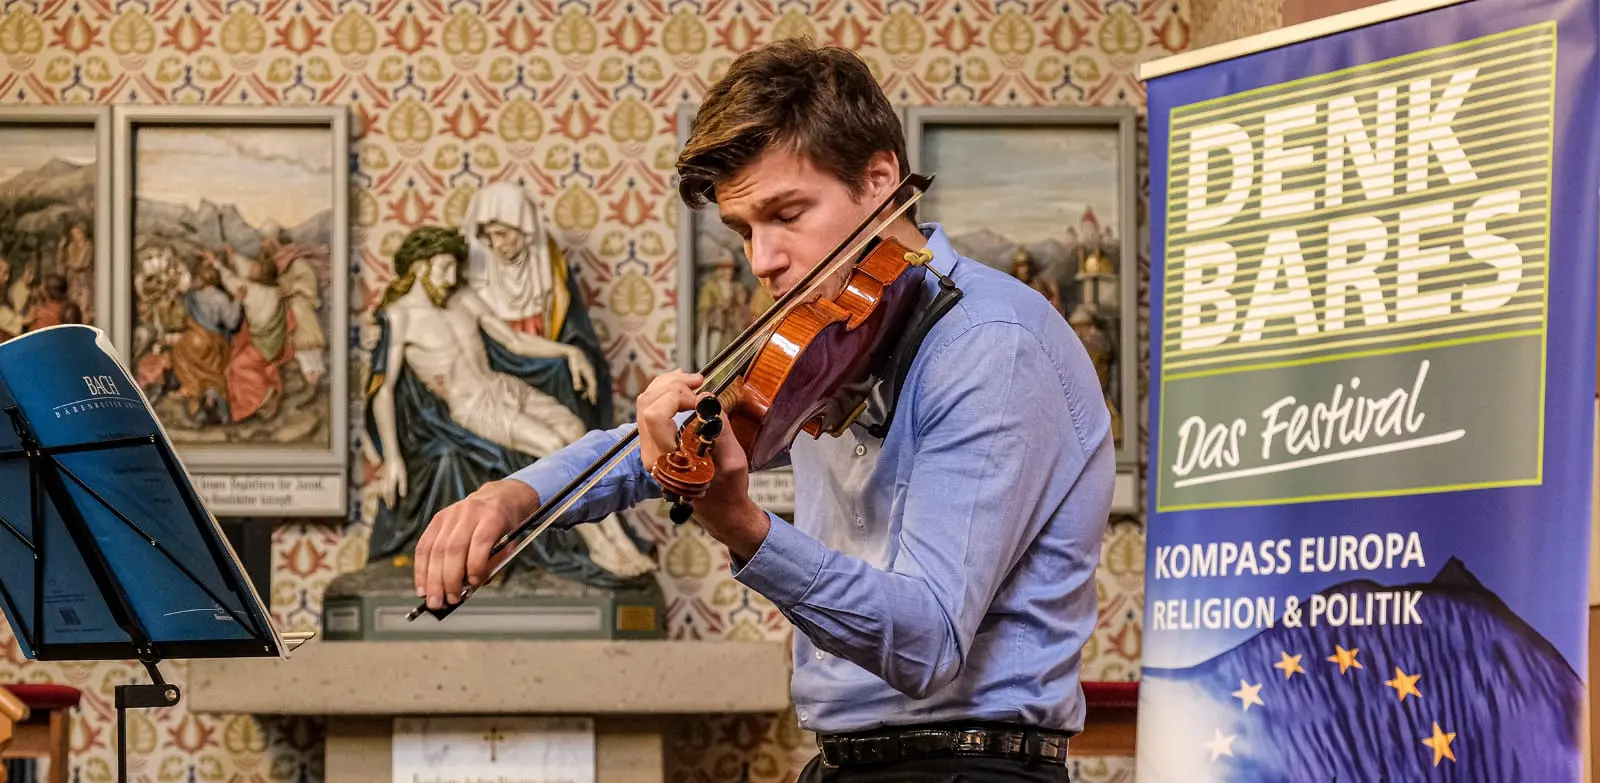 Ein junger Mann spielt Geige. Im Hintergrund sieht man einen Aussteller des Festivals